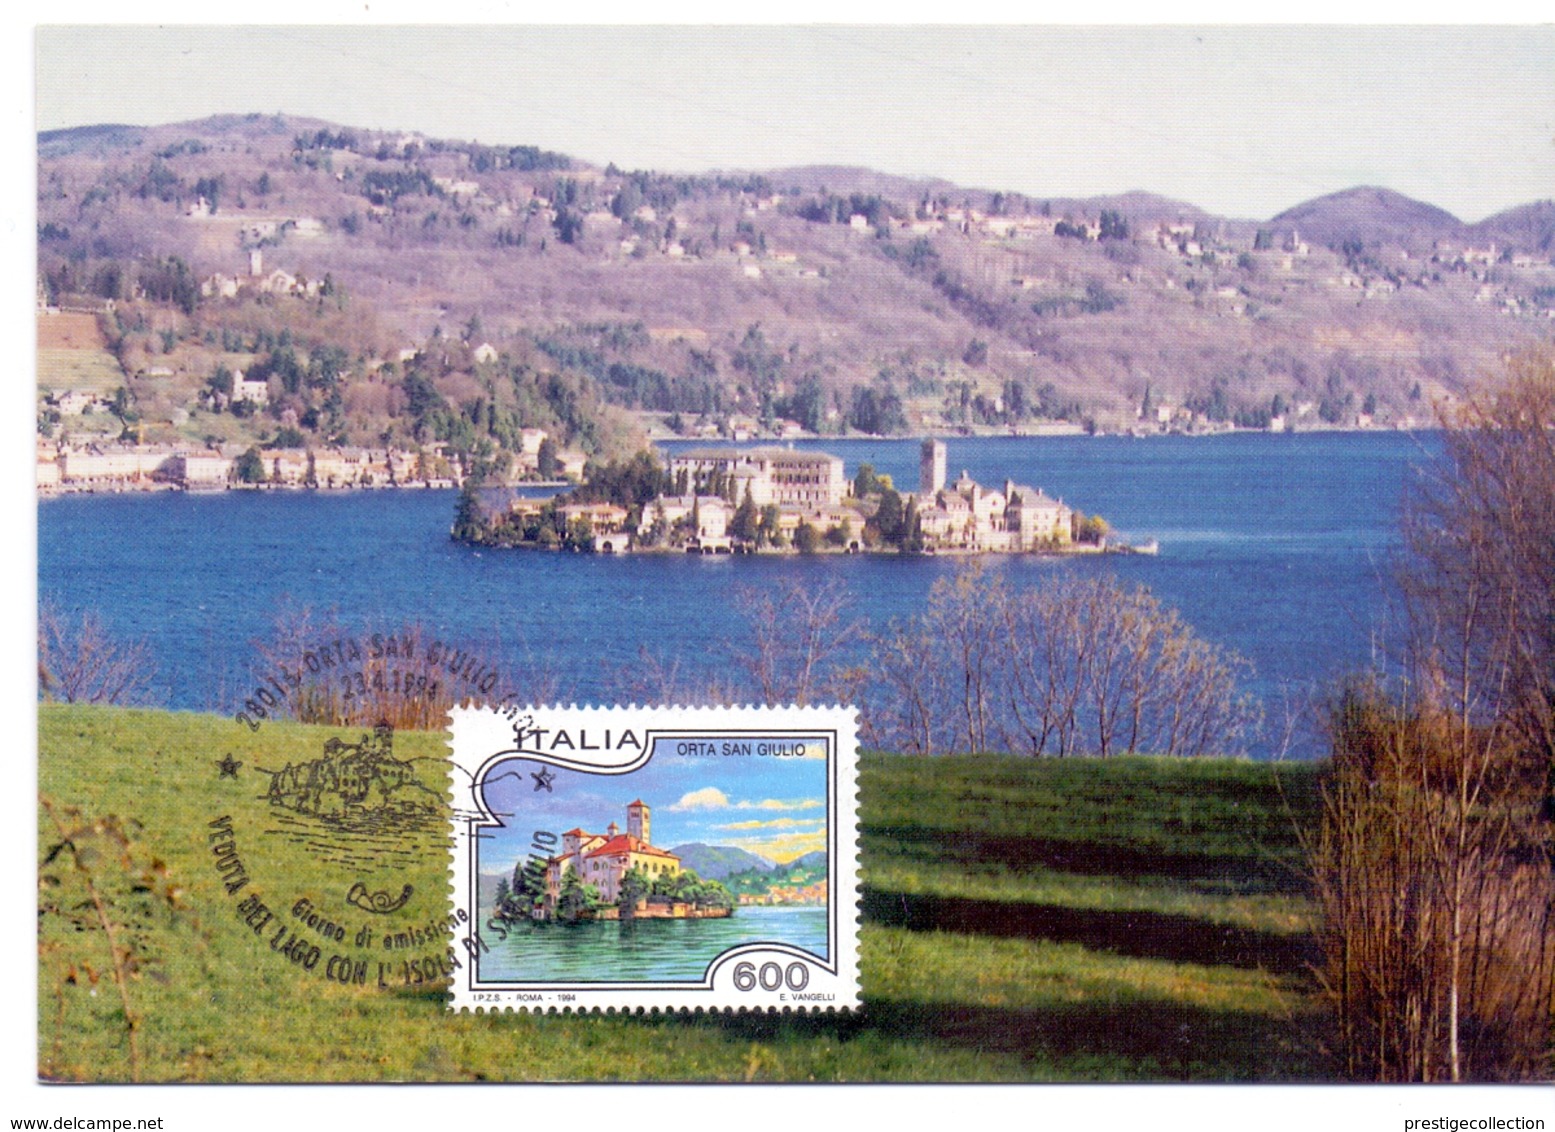 ORTA SAN GIULIO   1994 MAXIMUM POST CARD (GENN200008) - Geografia